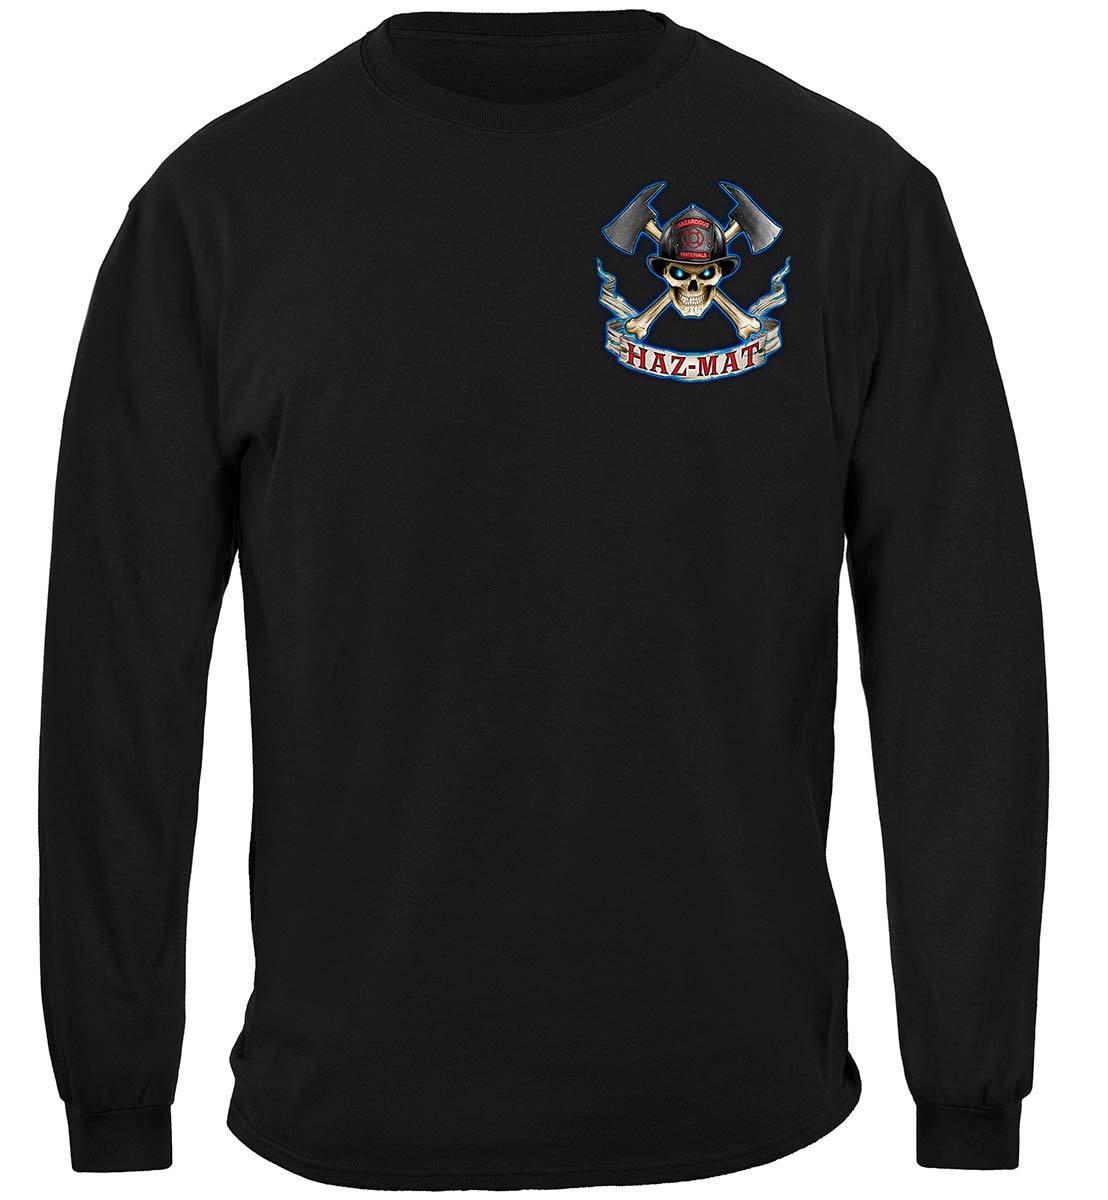 Haz Mat Firefighter Premium T-Shirt